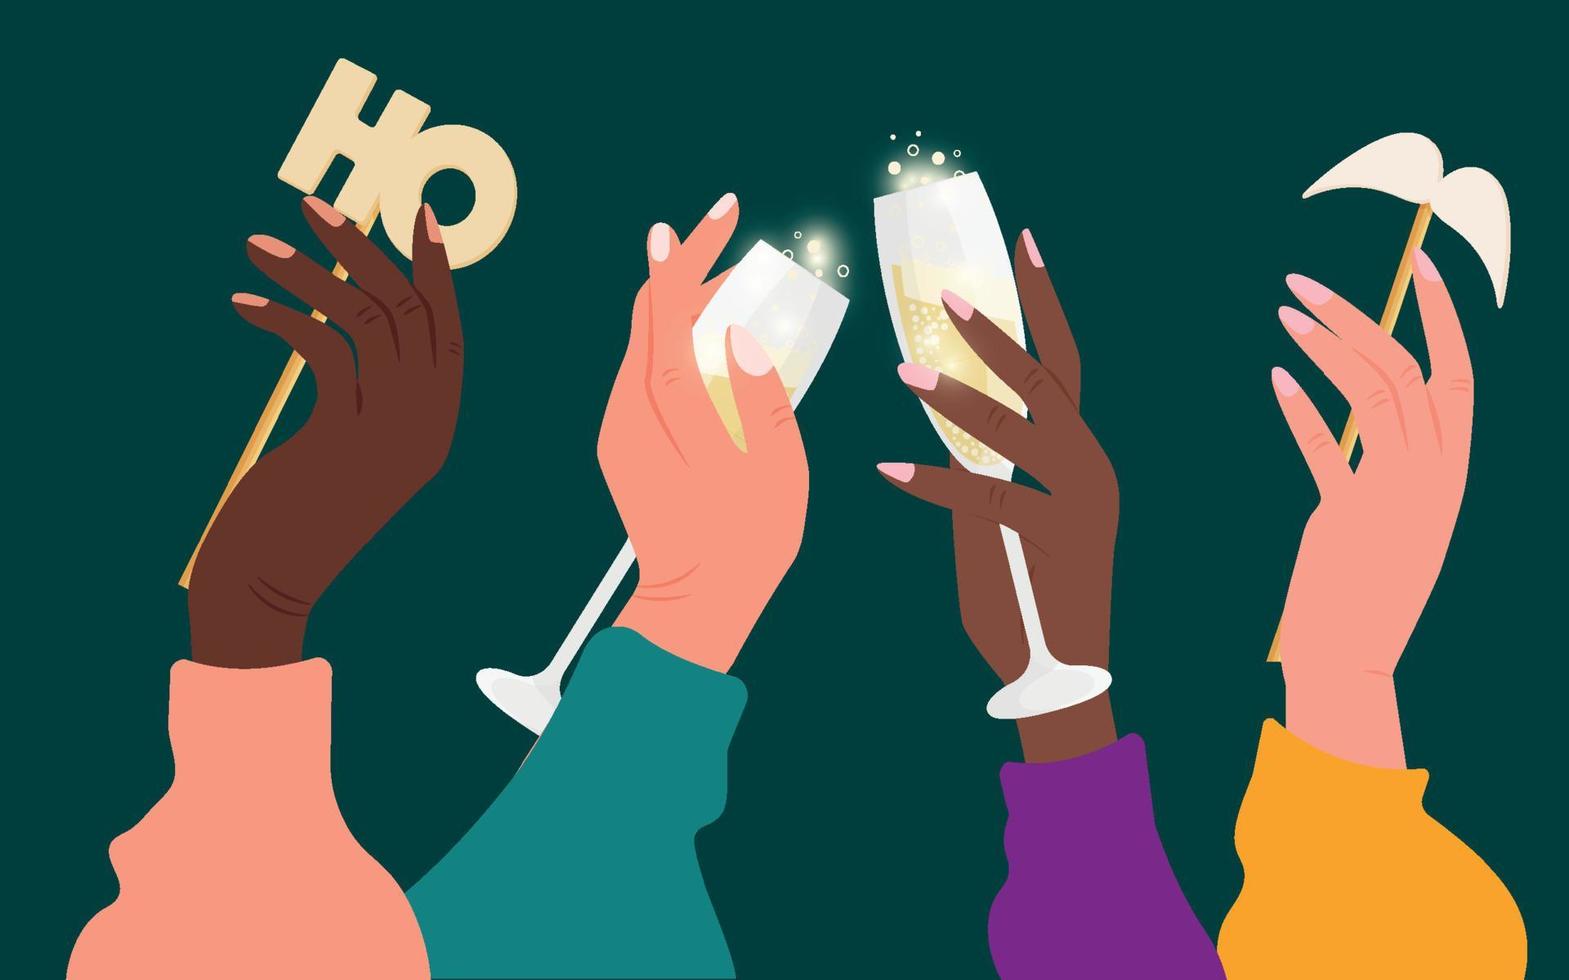 gelukkig nieuwjaar 2022 met glazen en champagne. kerst decor. vector illustratie